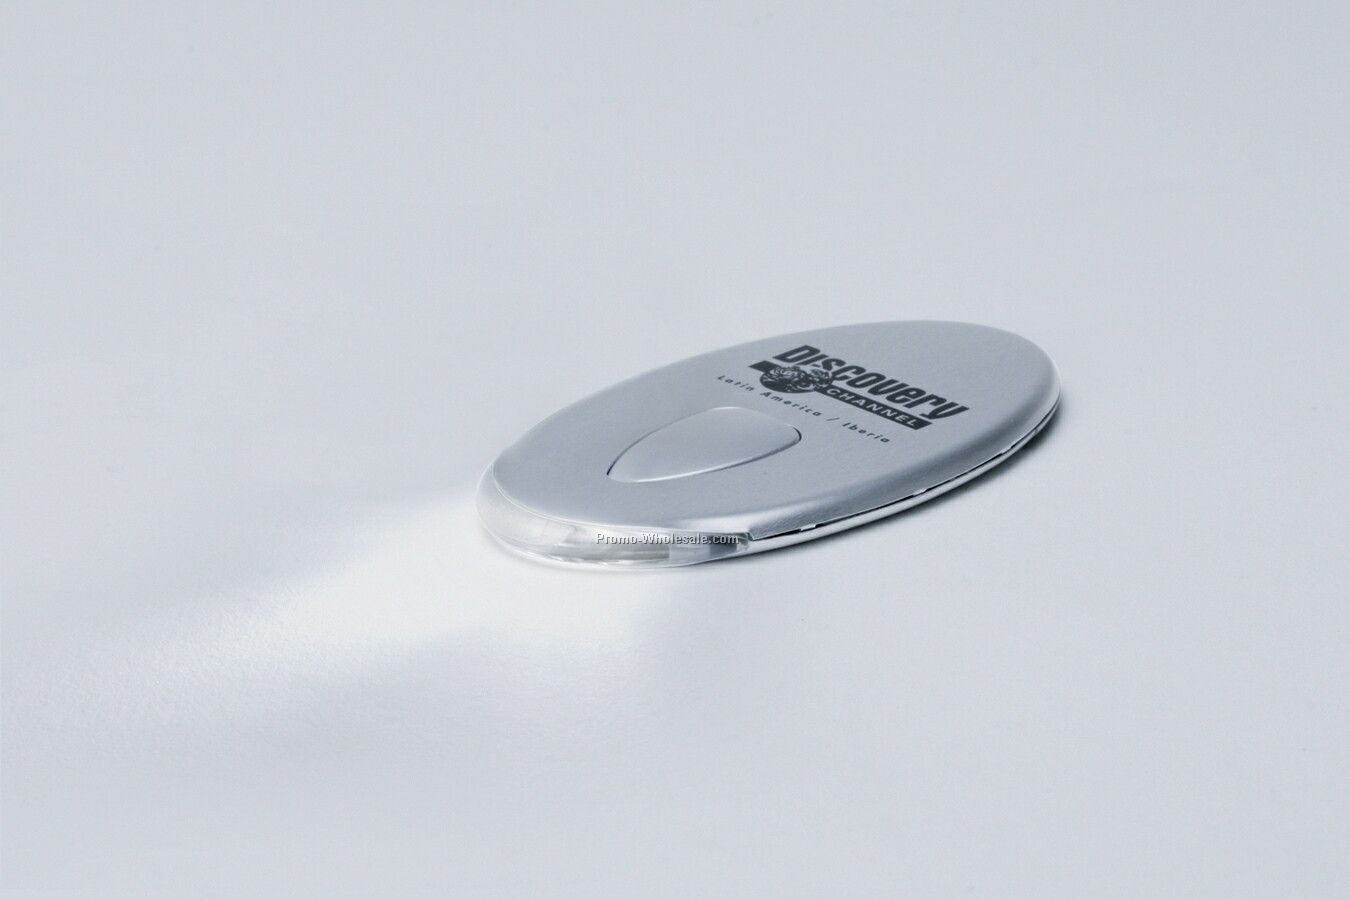 Phaser Brushed Metal Case W/ Stealth Like Design LED Flashlight